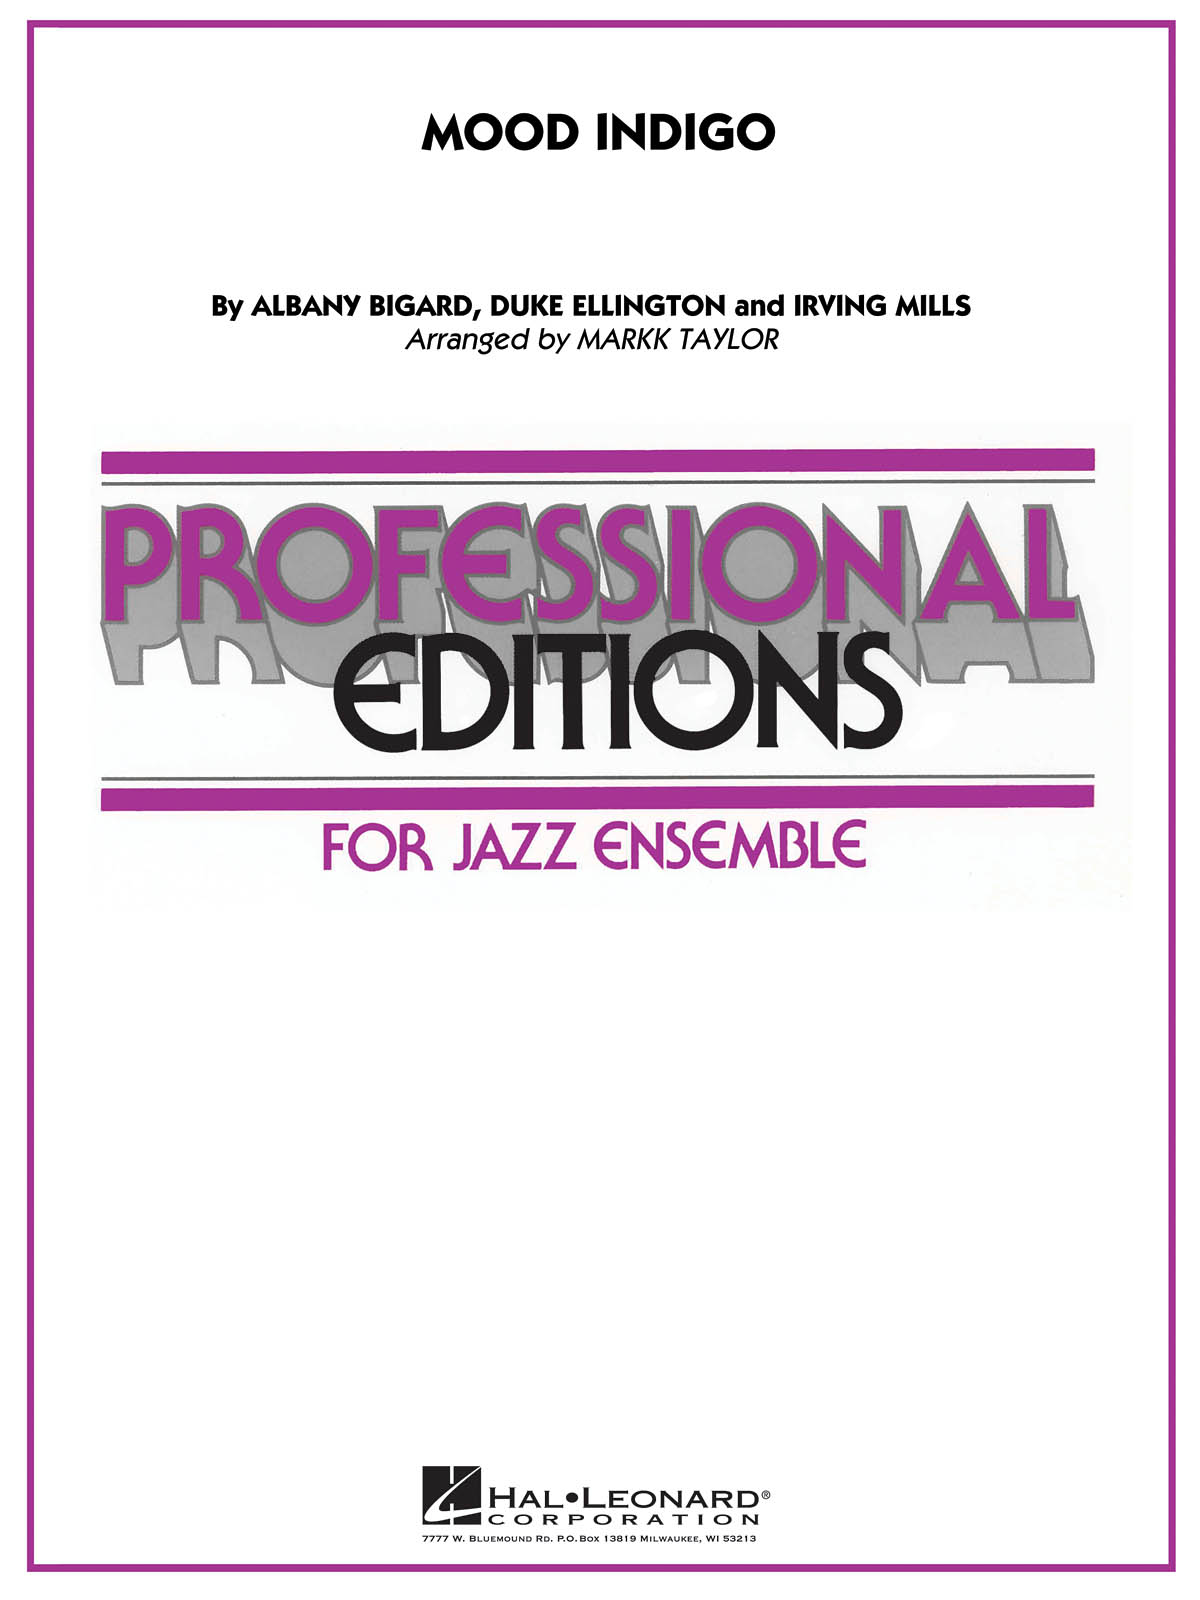 Albany Bigard Duke Ellington Irving Mills: Mood Indigo: Jazz Ensemble: Score &